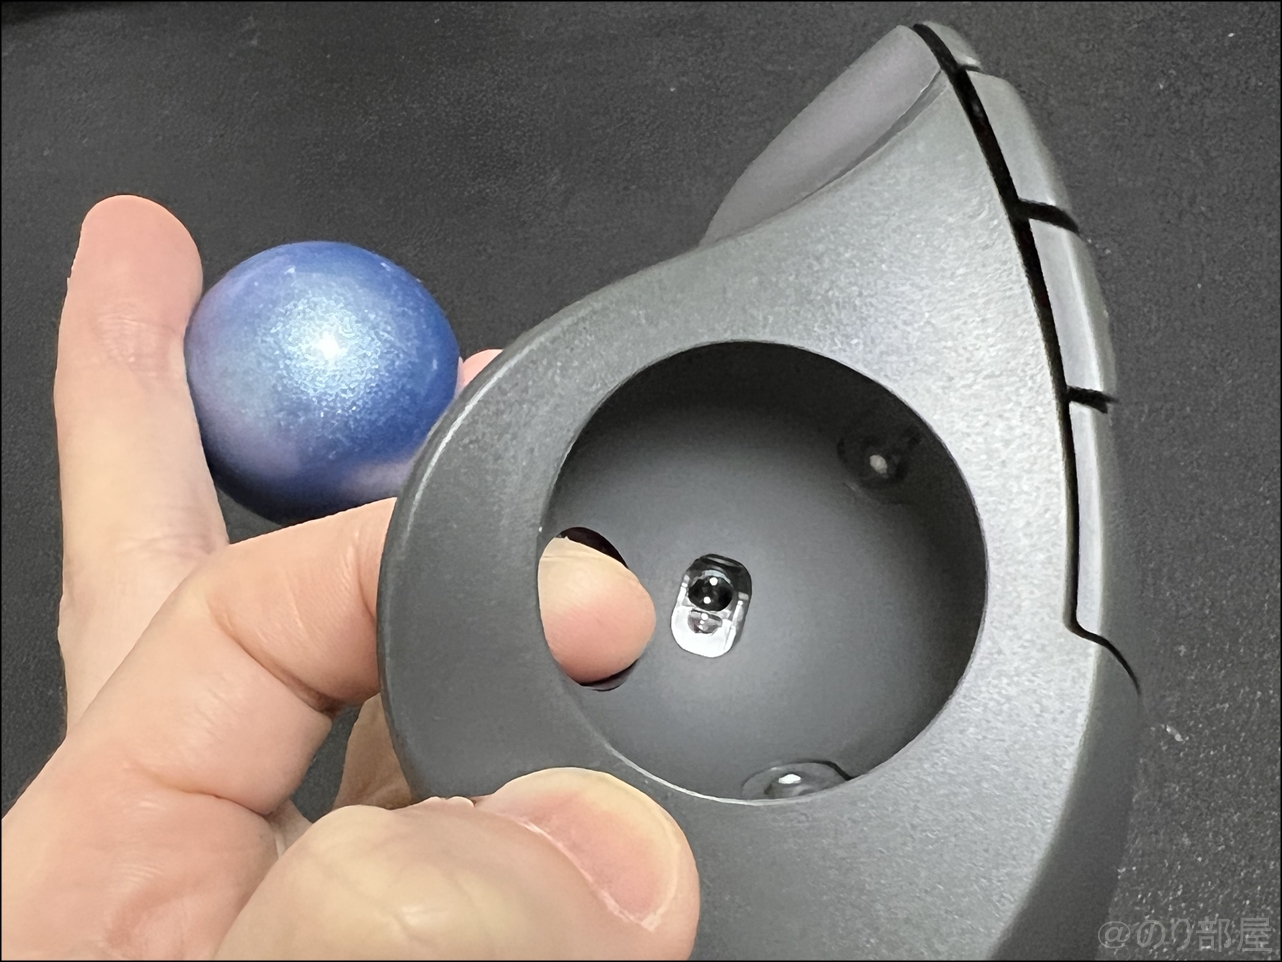 M575 トラックボールを指でボールを外す ロジクール M575のボールが指で外せるのがとても便利で最高！【トラックボール】【徹底解説】ロジクール「M575」VS「MX ERGO」の比較レビュー｡M575の問題発見!メリット･デメリットを紹介します！